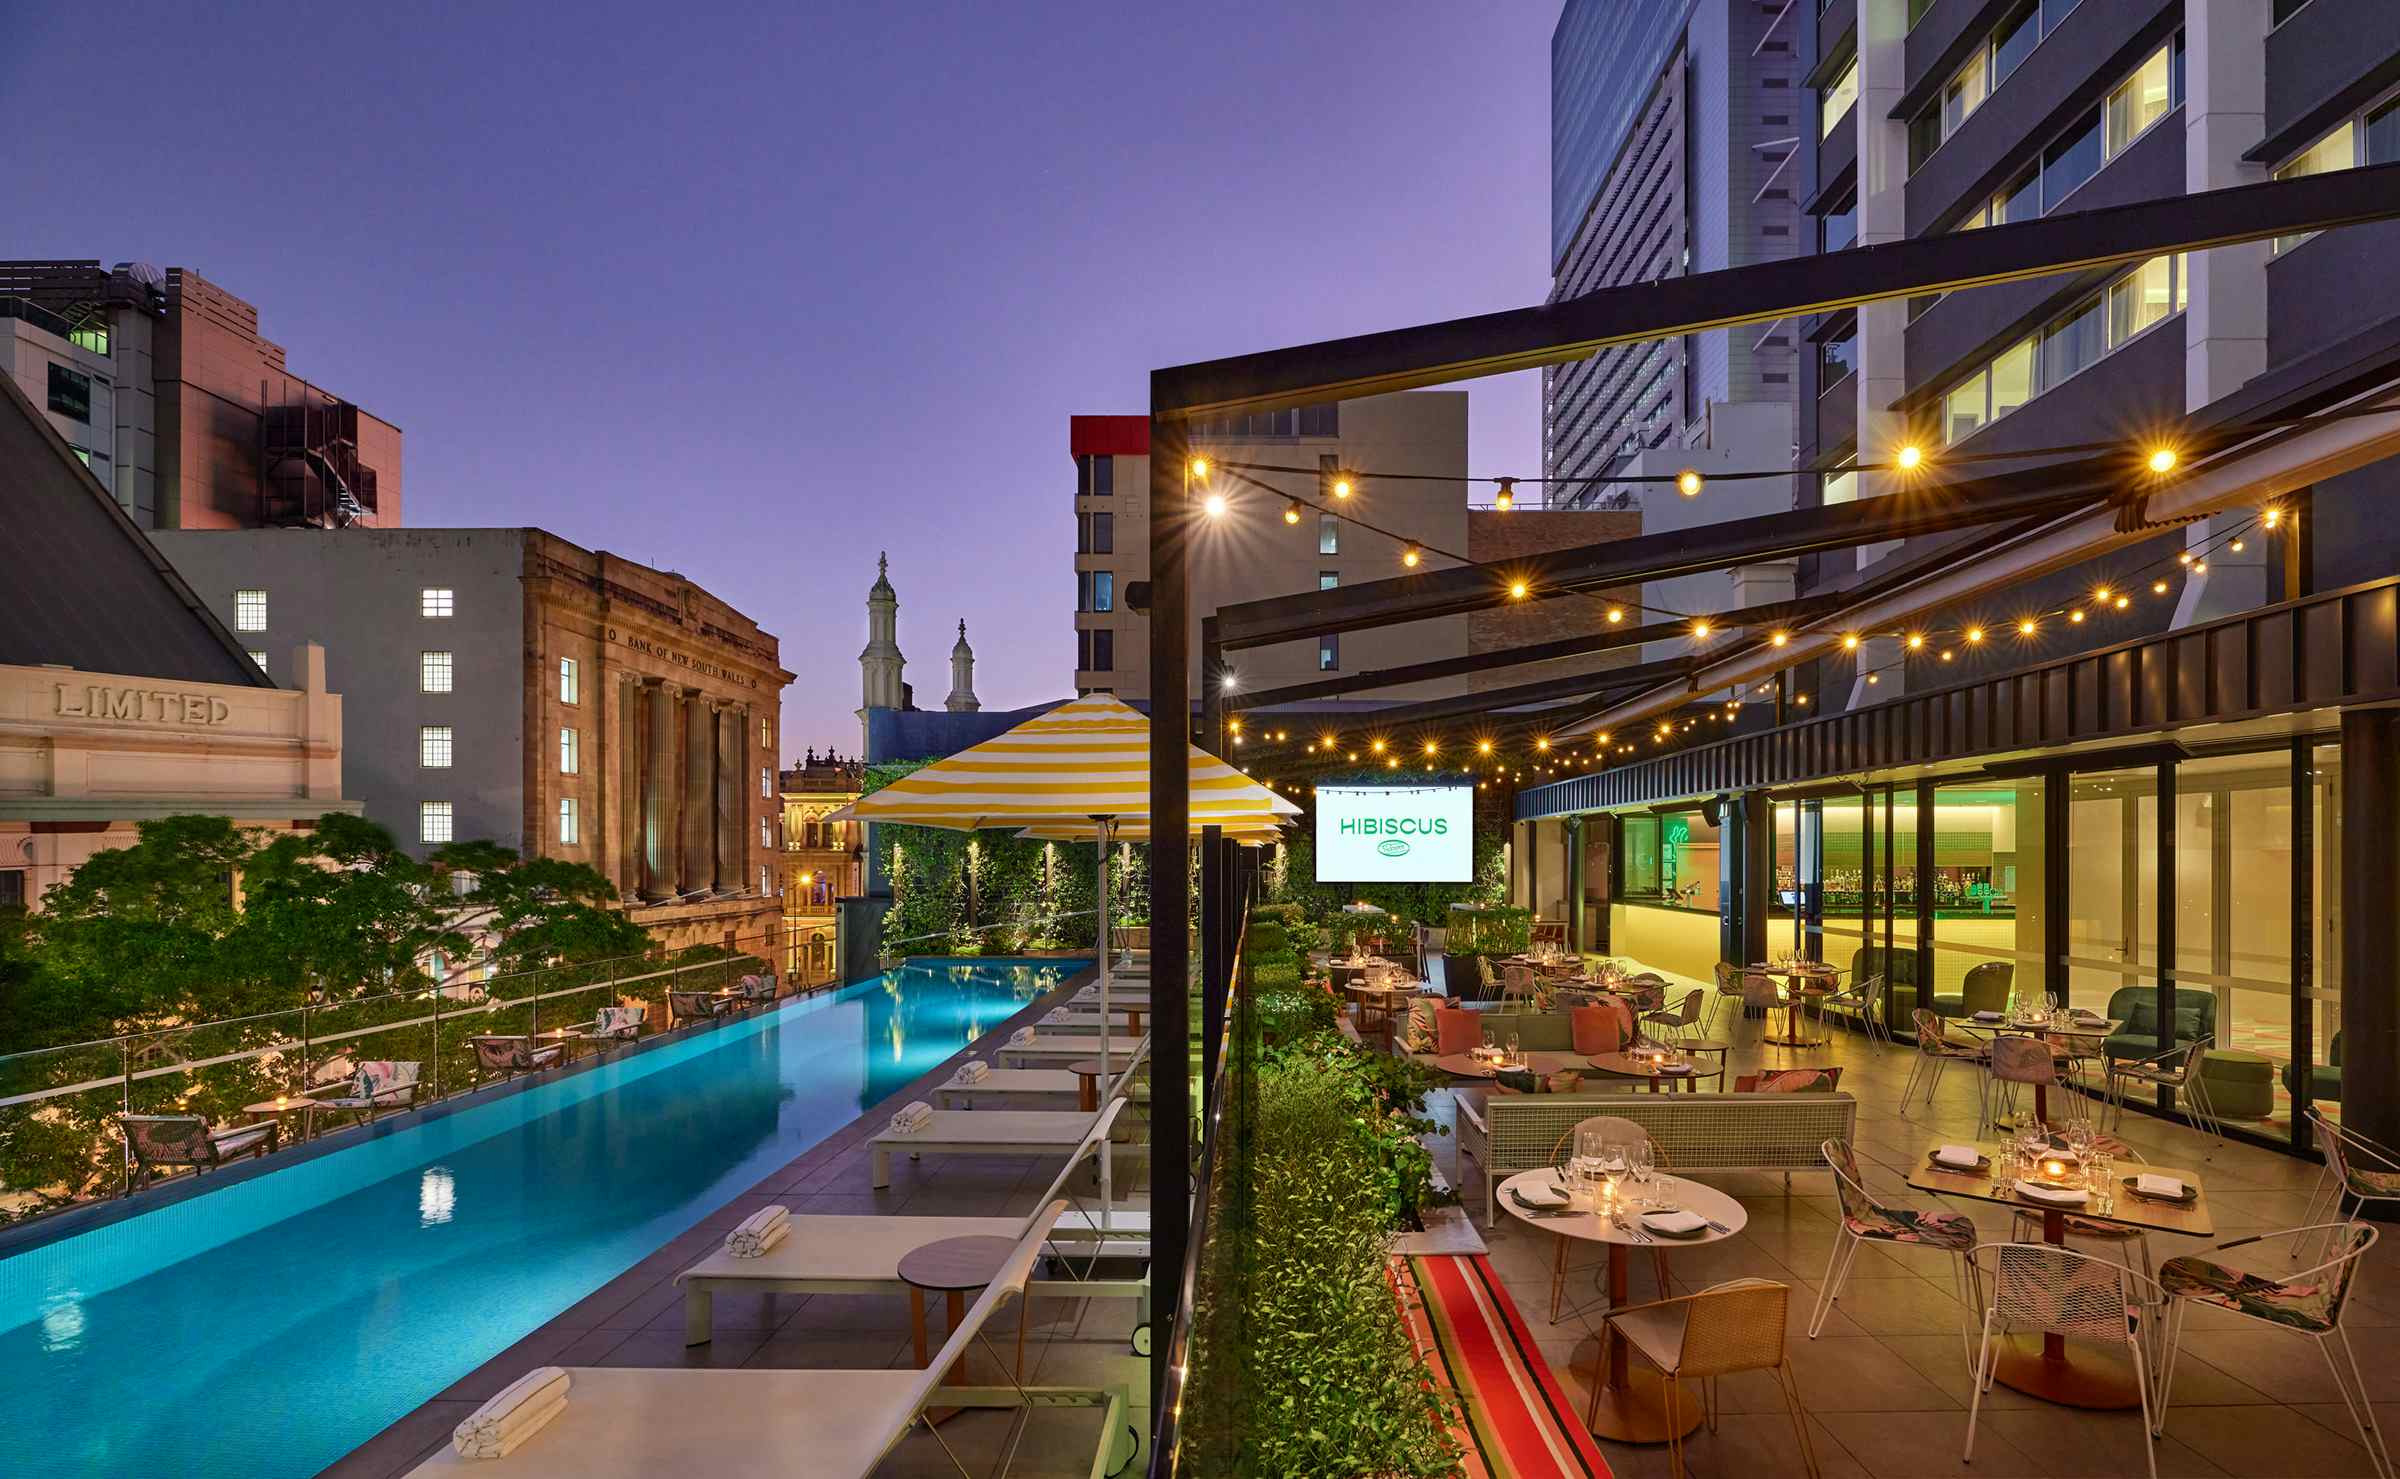 Hibiscus Room Terrace and Events - Exclusive, Hyatt Regency Brisbane